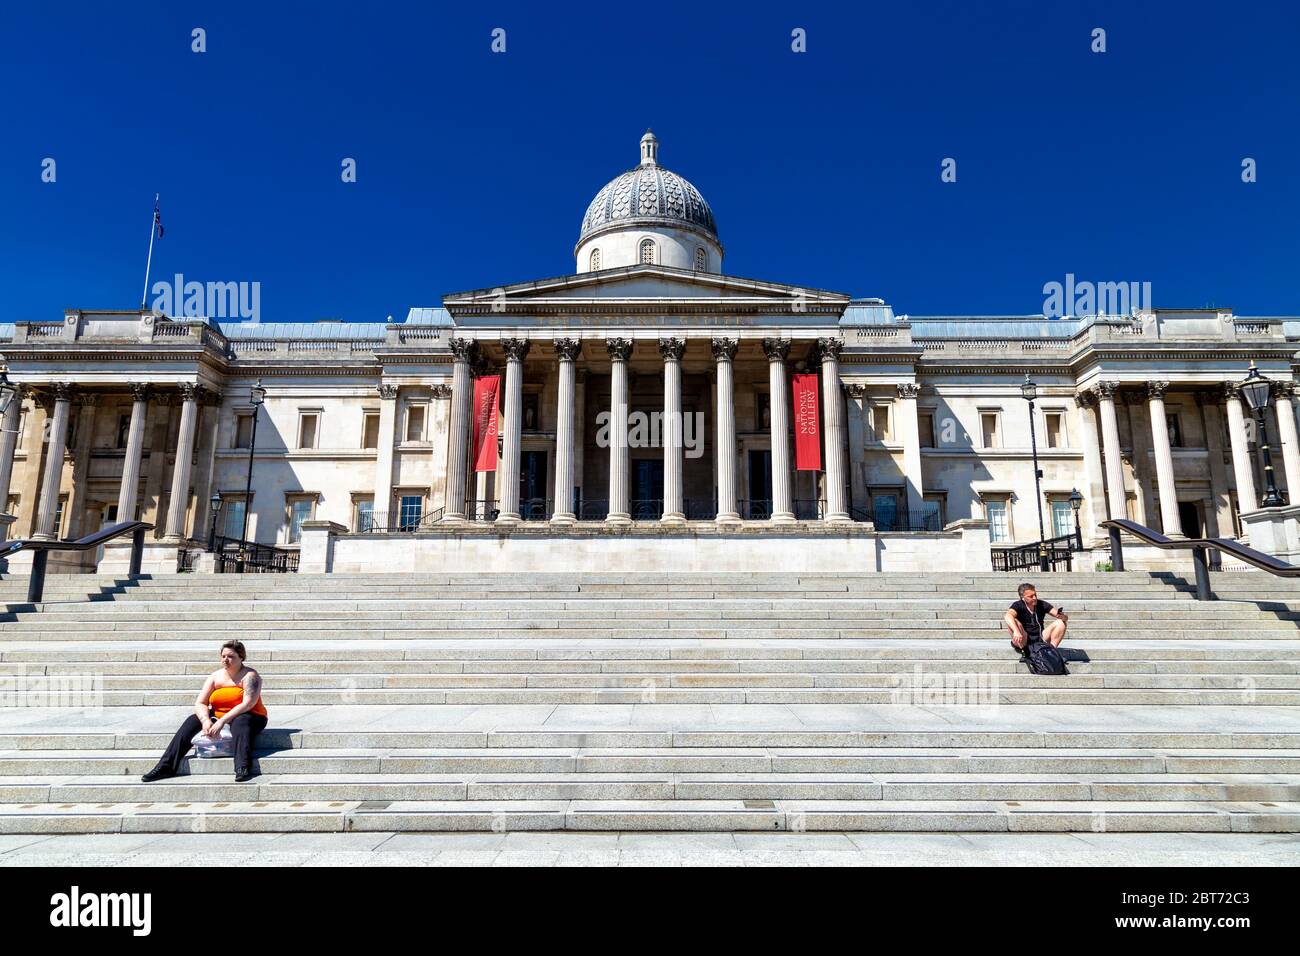 21 maggio 2020, Londra, Regno Unito - persone che si trovano sui gradini della National Gallery in Piazza Trafalgar quasi deserta e vuota durante il blocco pandemico di Coronavirus Foto Stock